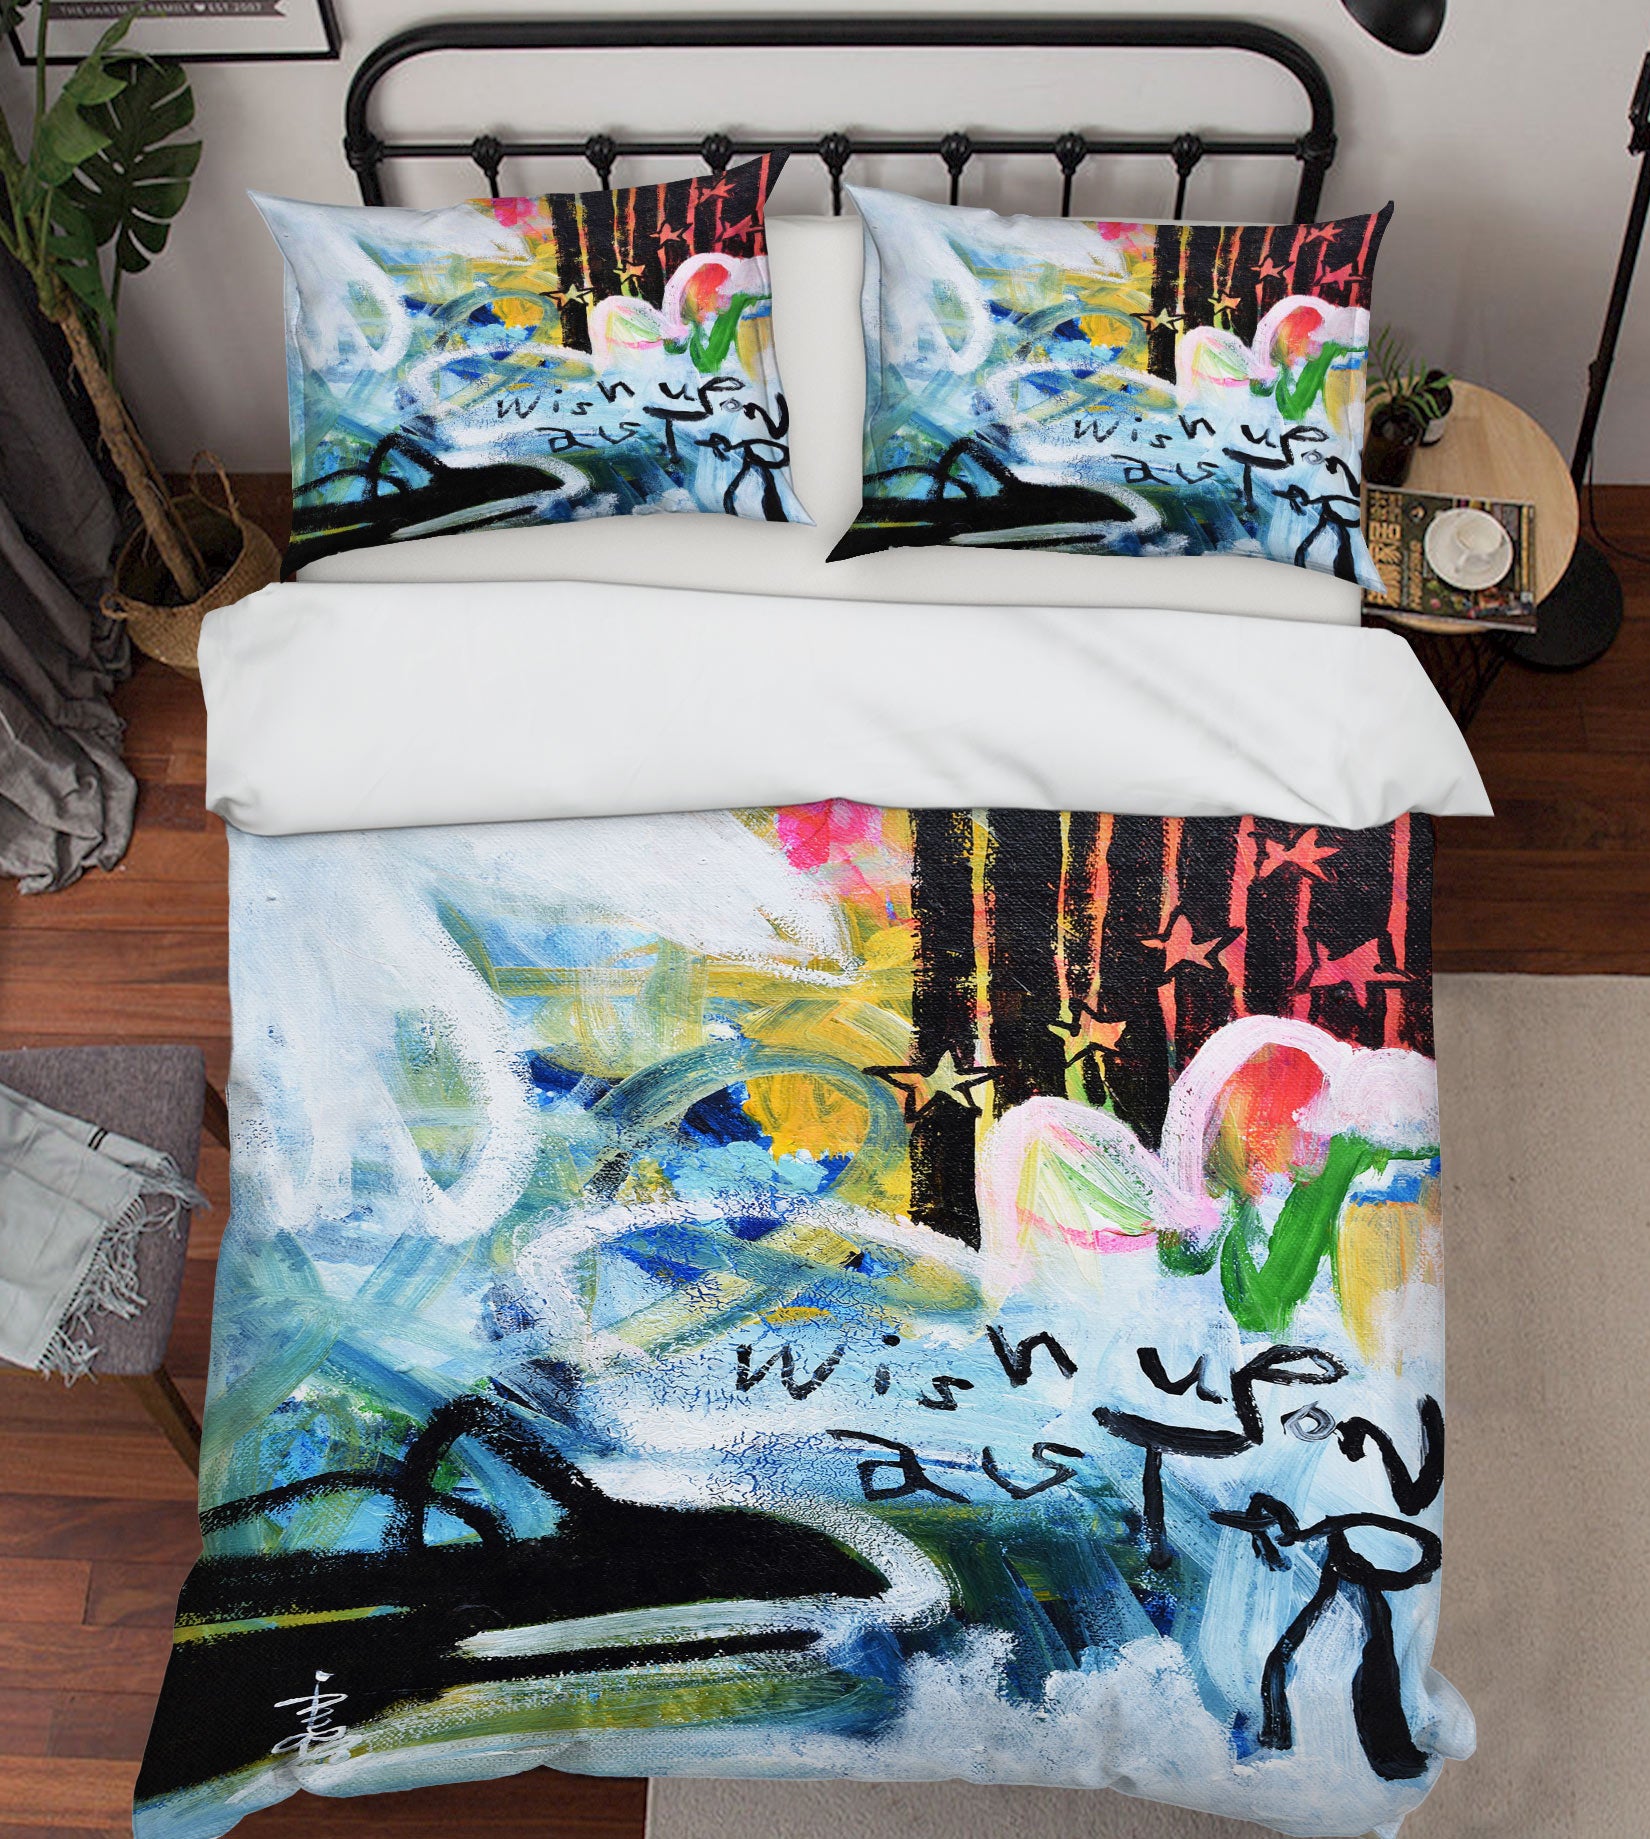 3D Messy Graffiti 1237 Misako Chida Bedding Bed Pillowcases Quilt Cover Duvet Cover